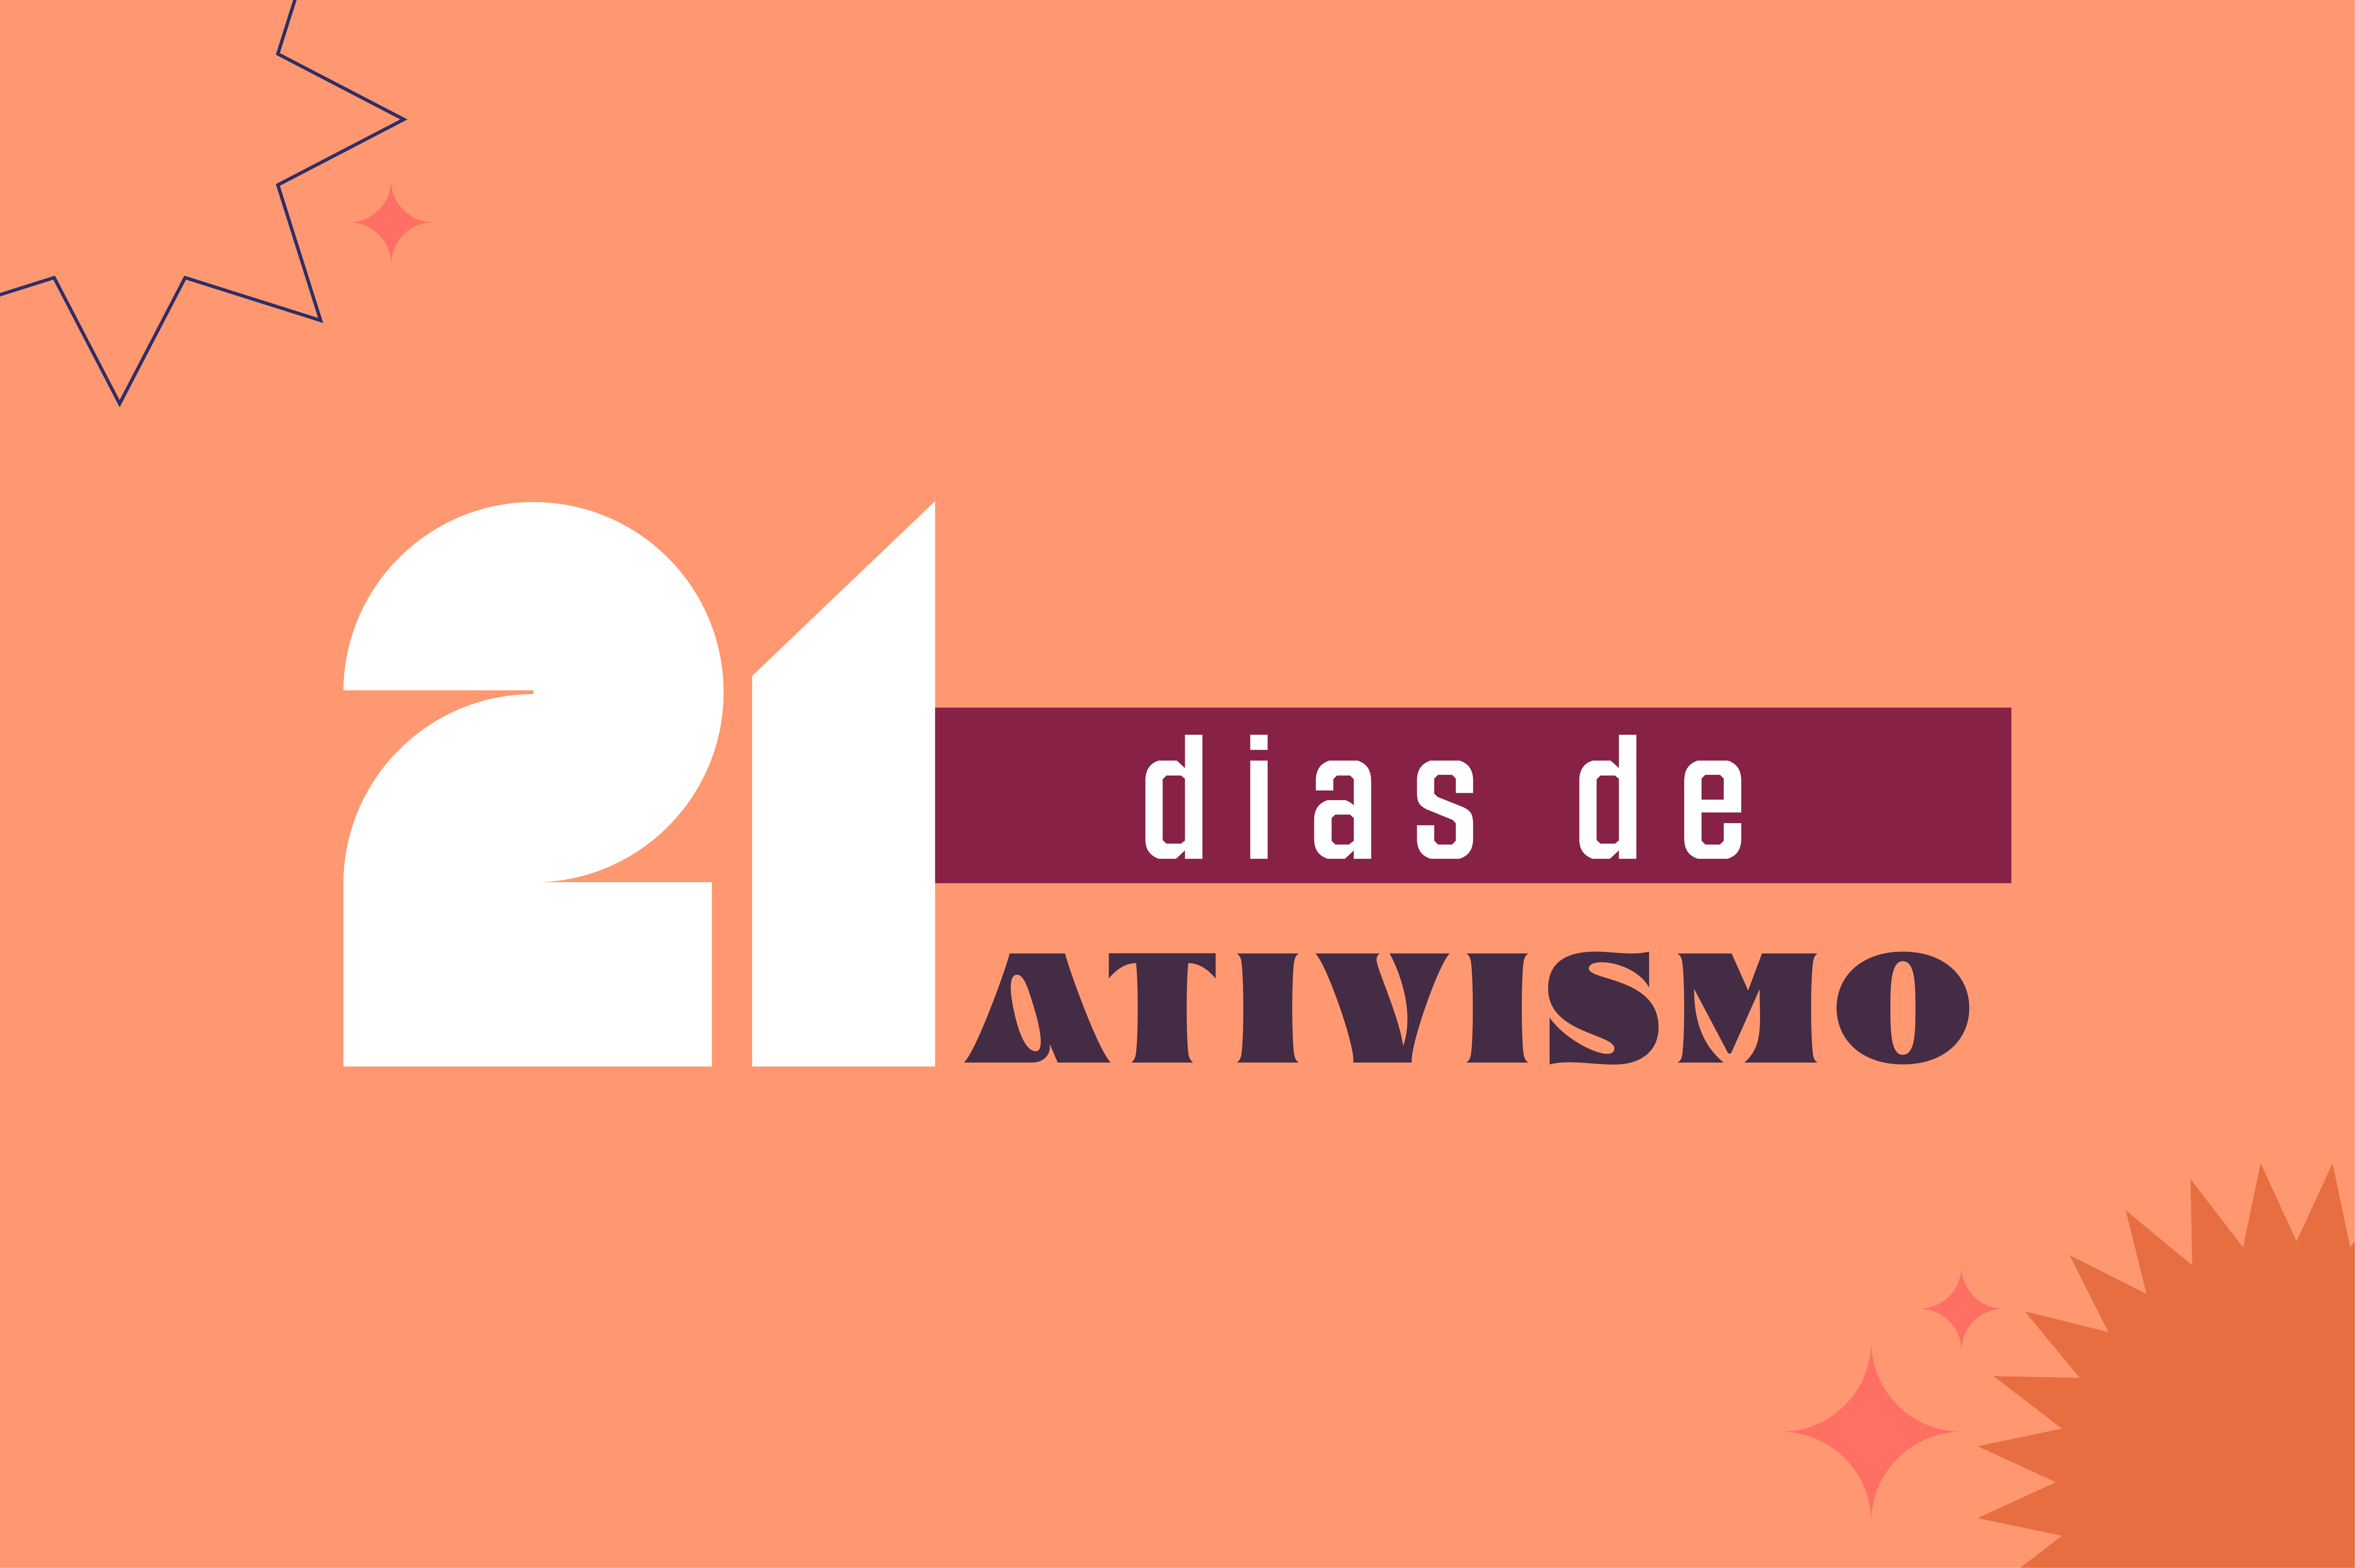 21_dias_de_ativismo_ApresentaConceito_Online_BannerNoticia.png - 308,35 kB